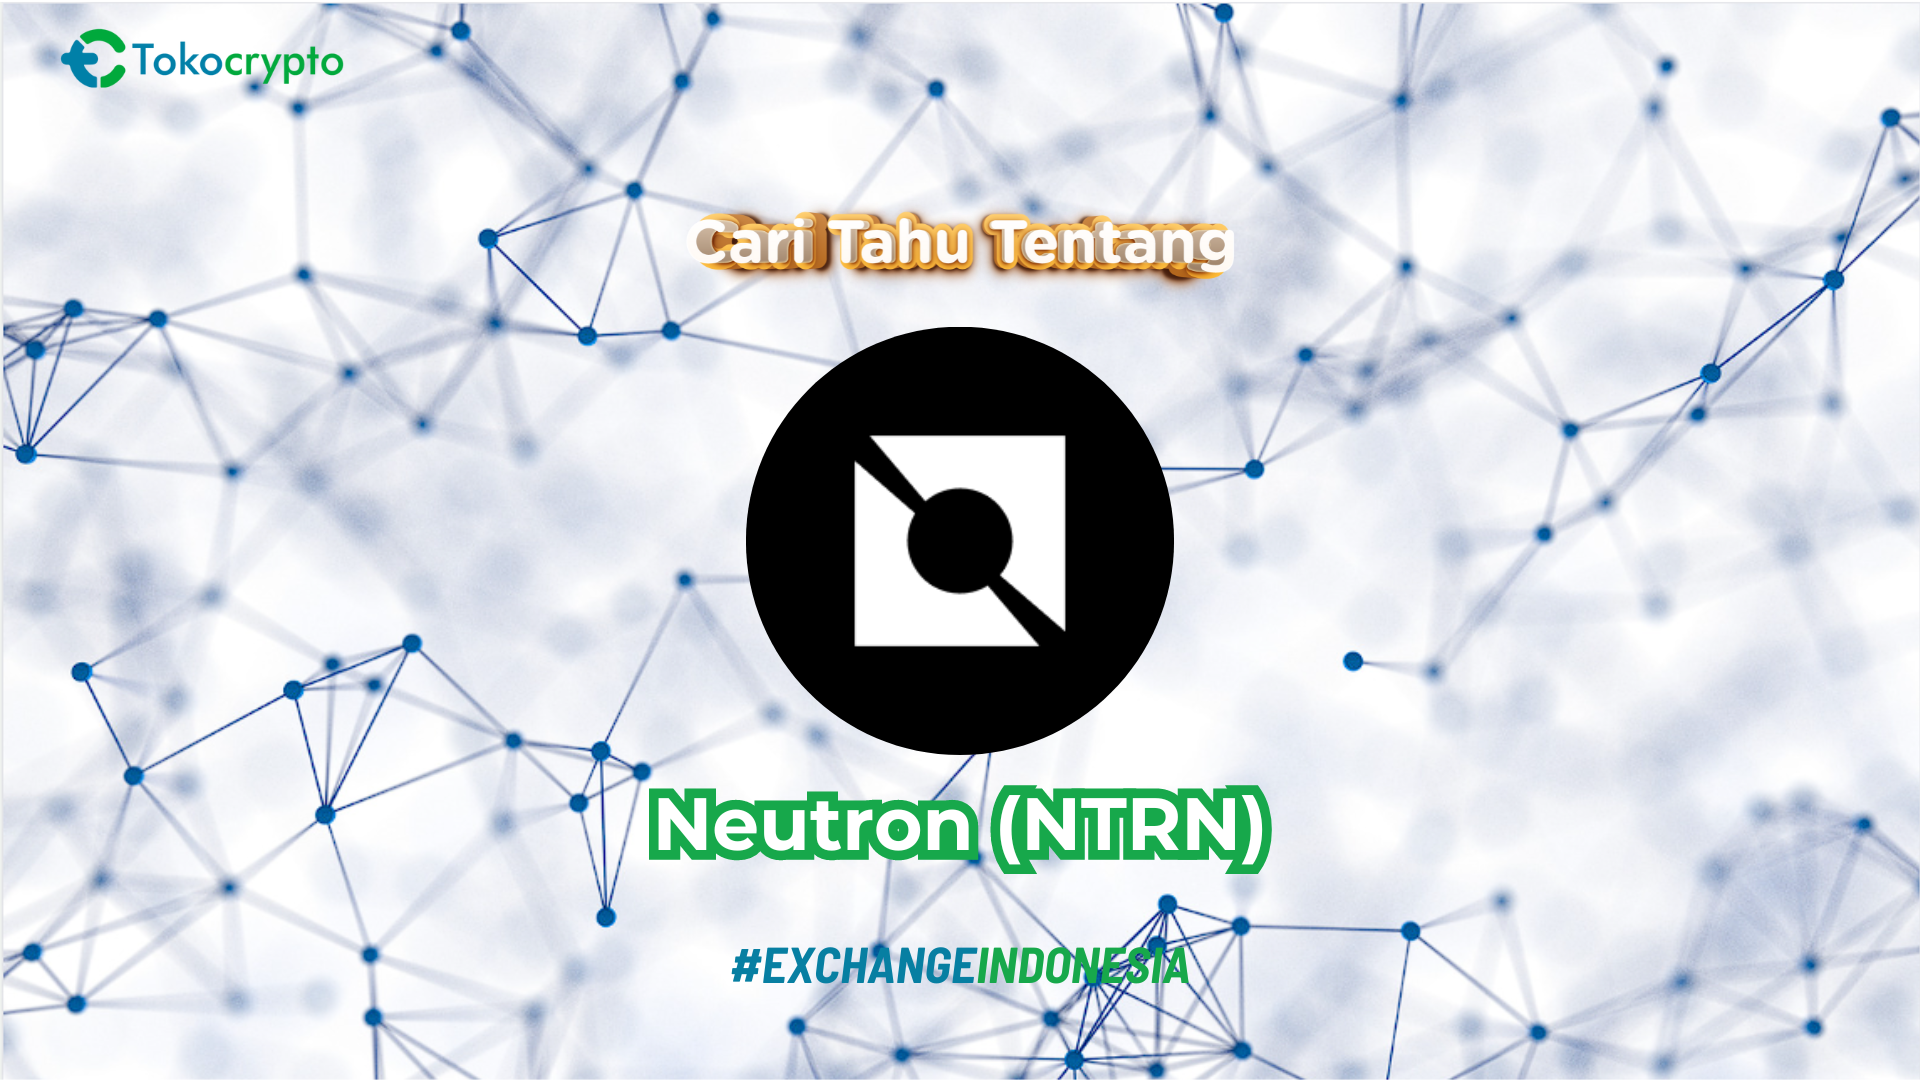 Ilustrasi aset kripto Neutron (NTRN). Sumber: Tokocrypto.